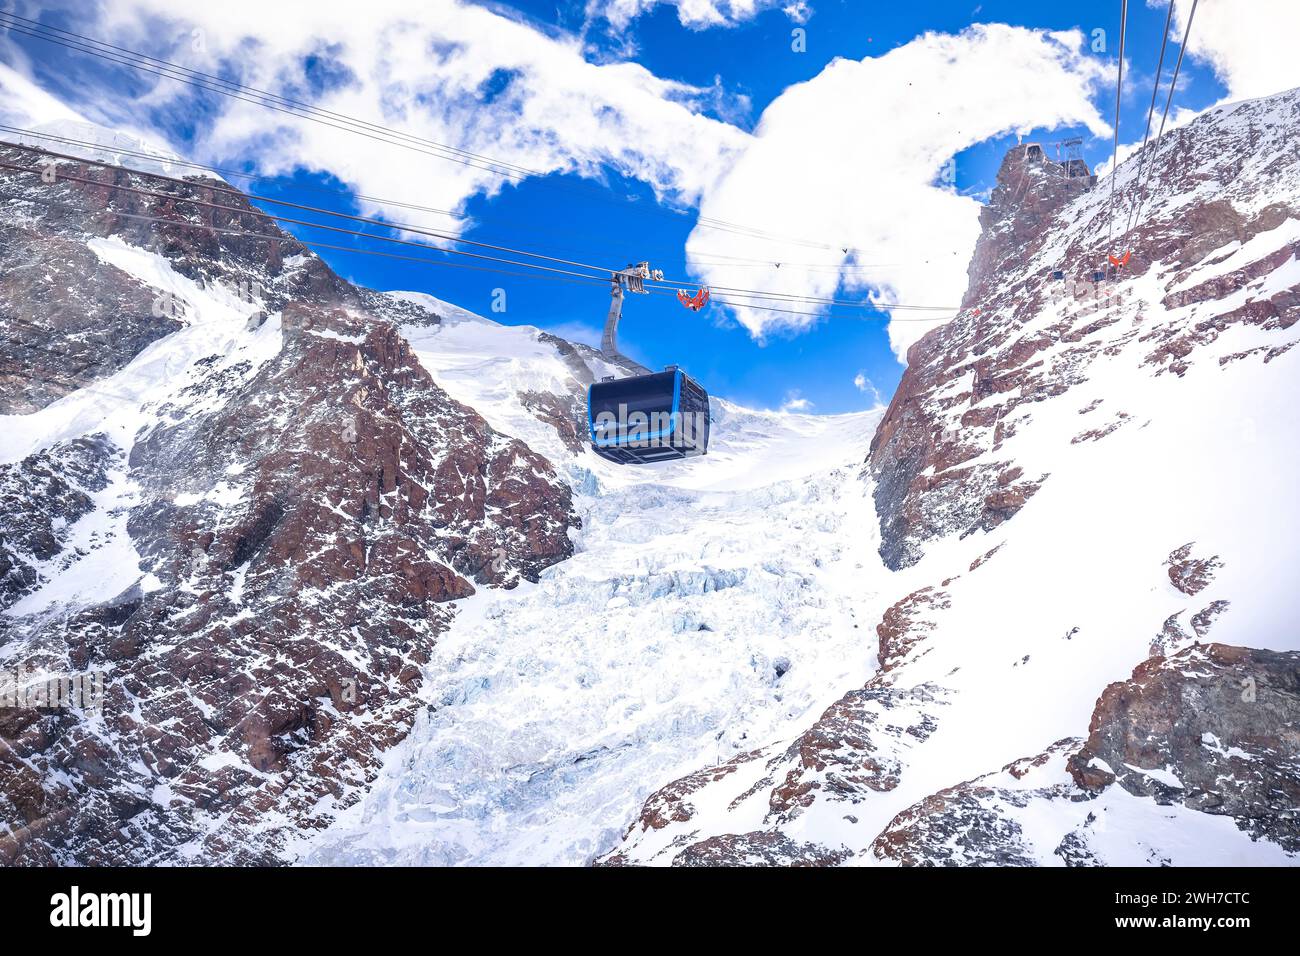 Matterhorn Glacier Paradise Gondola et Theodul Glacier à Zermatt vue, région du Valais dans les Alpes suisses Banque D'Images